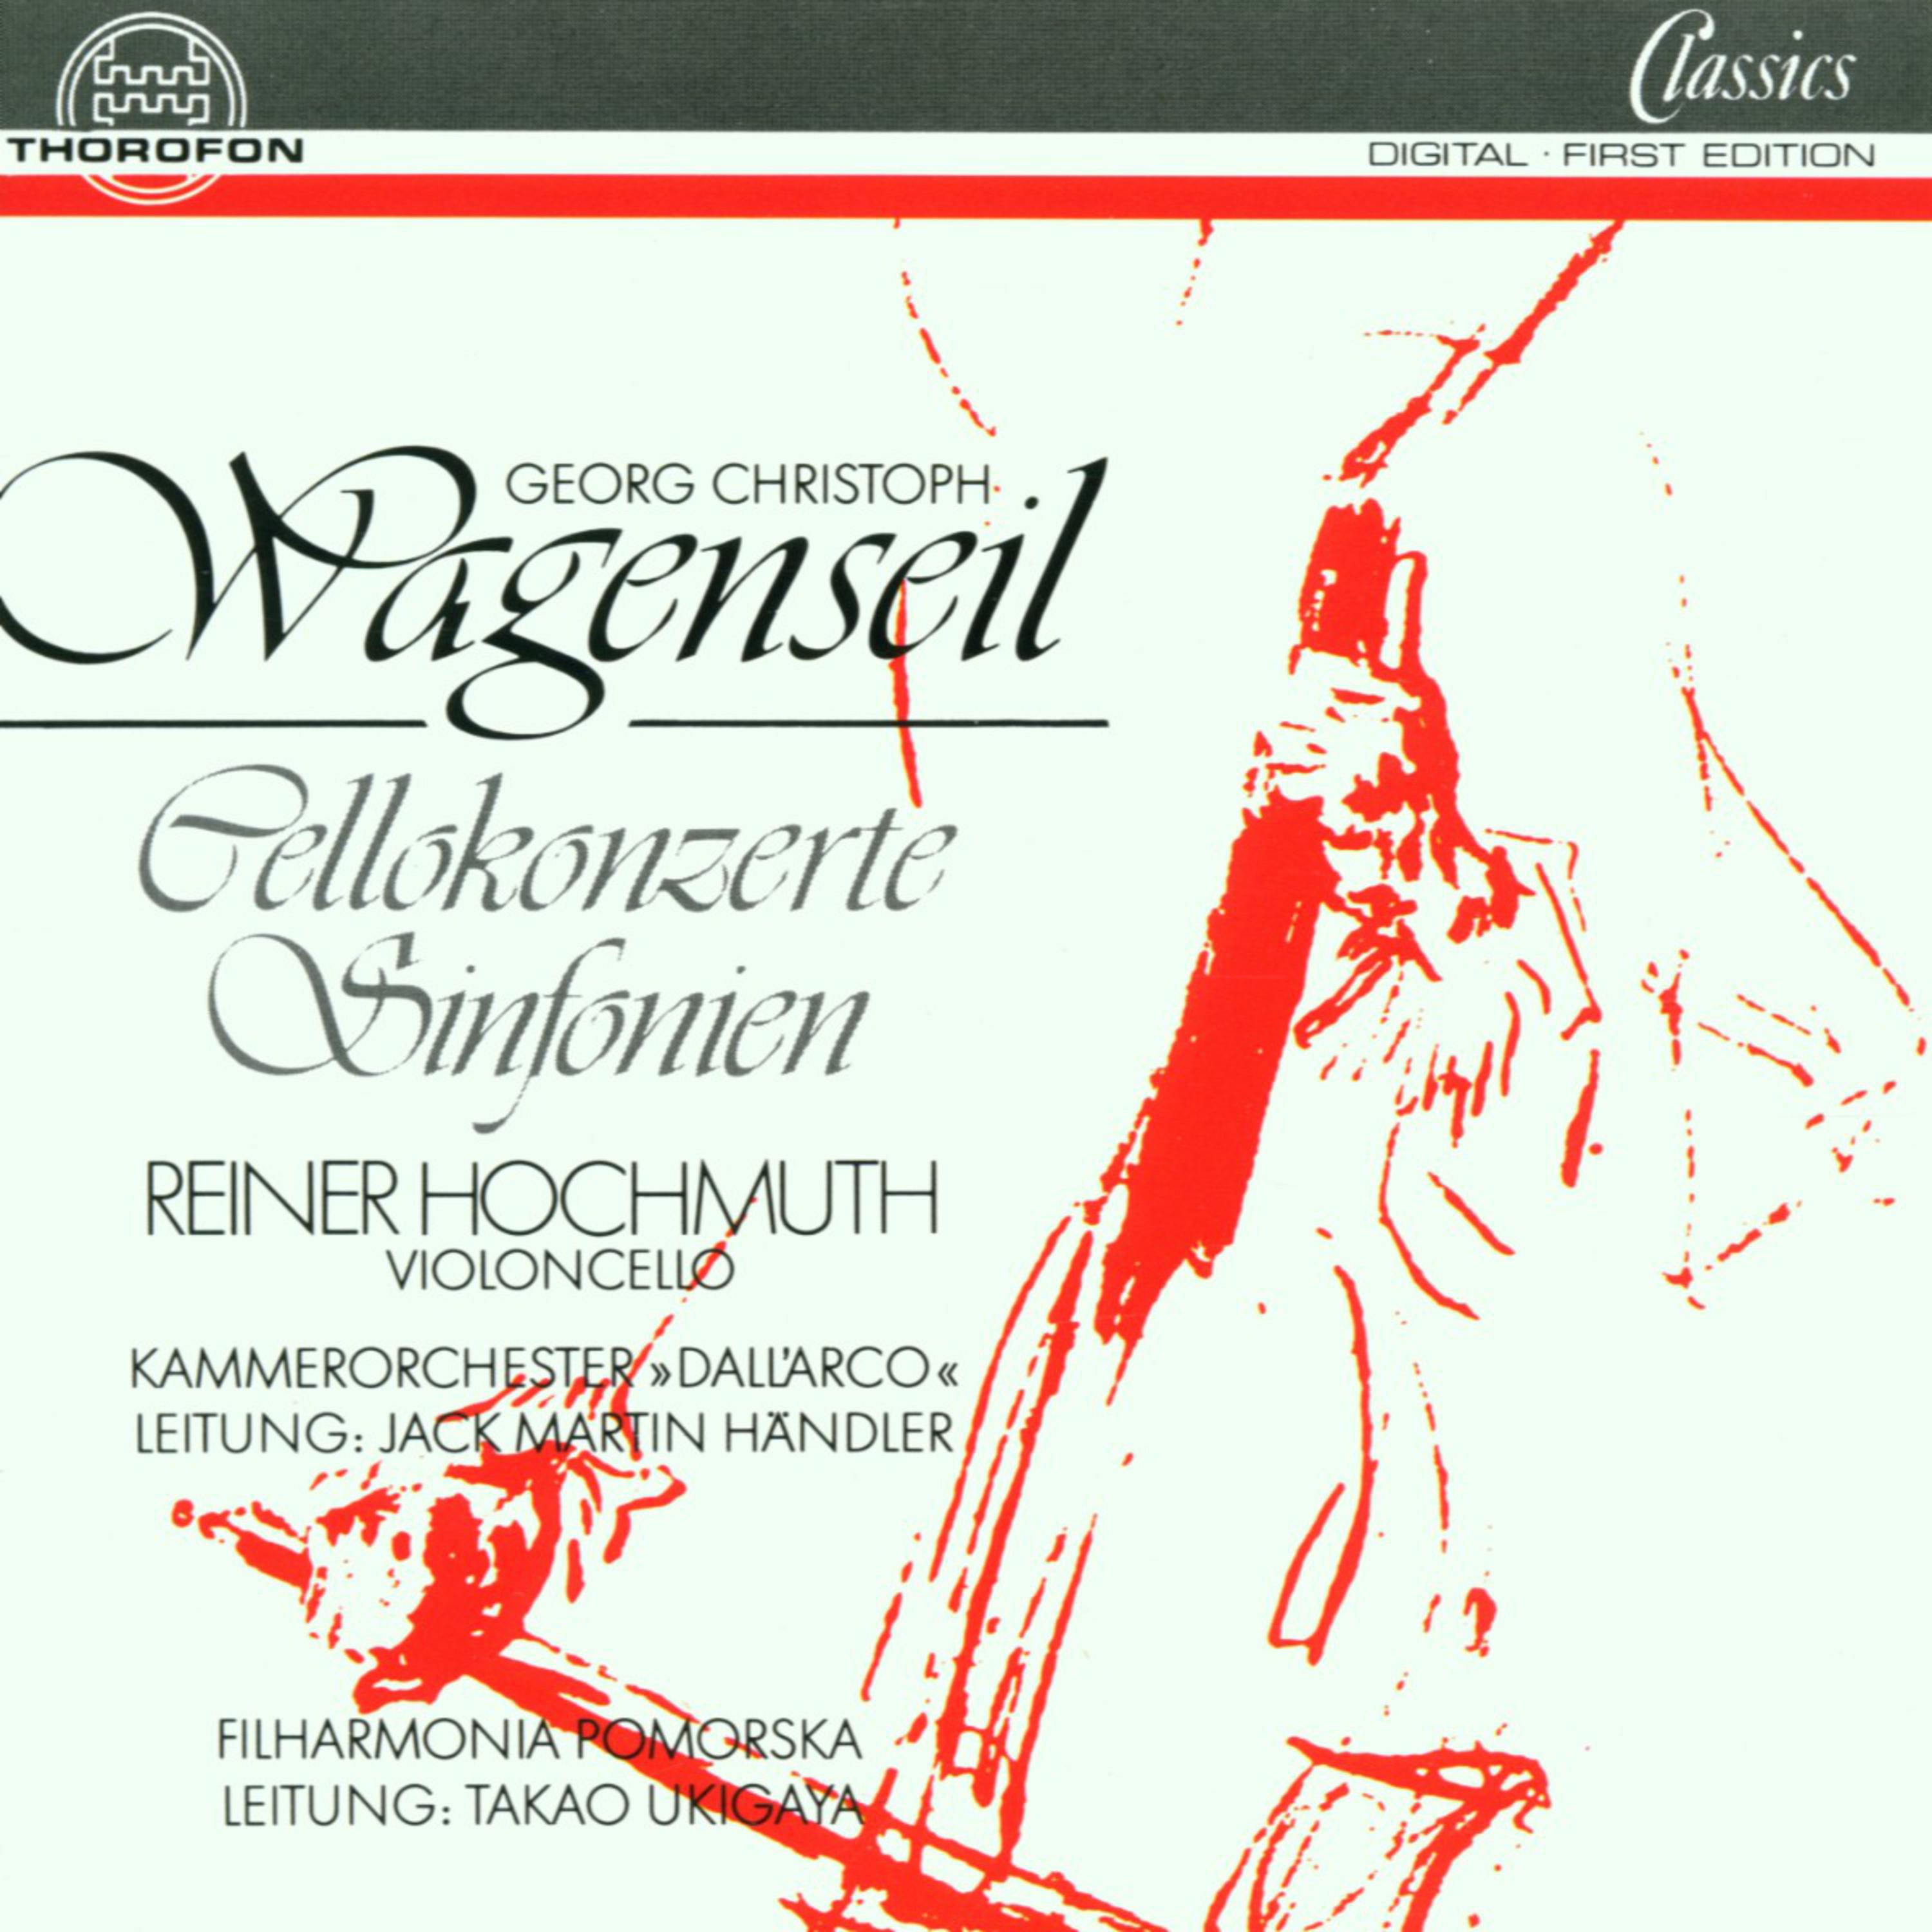 Concerto In A fü r Violoncello und Streichorchester: I. Allegro